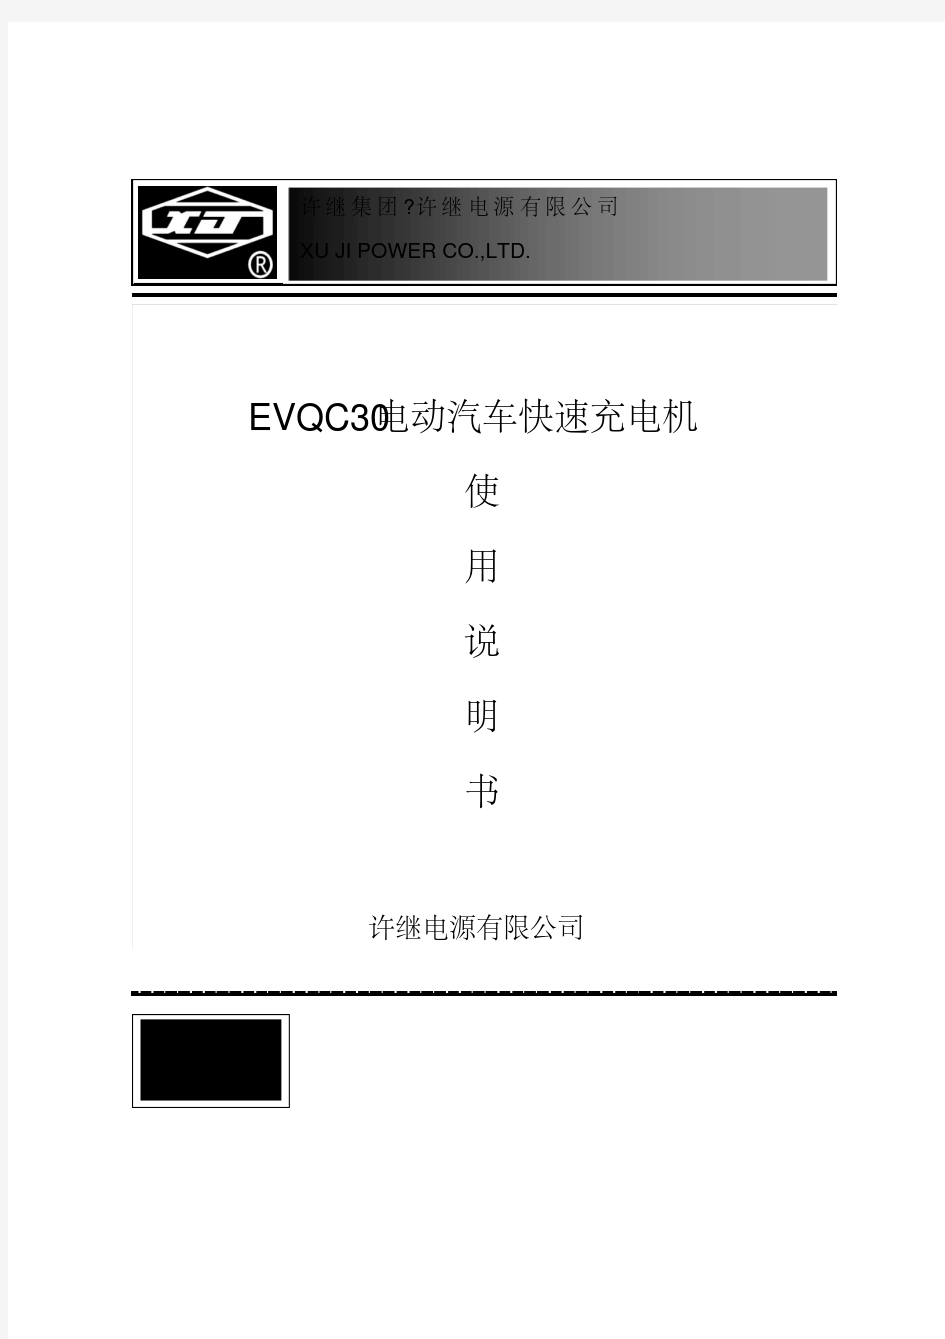 EVQC30-电动汽车快速充电机使用说明书(许继)资料